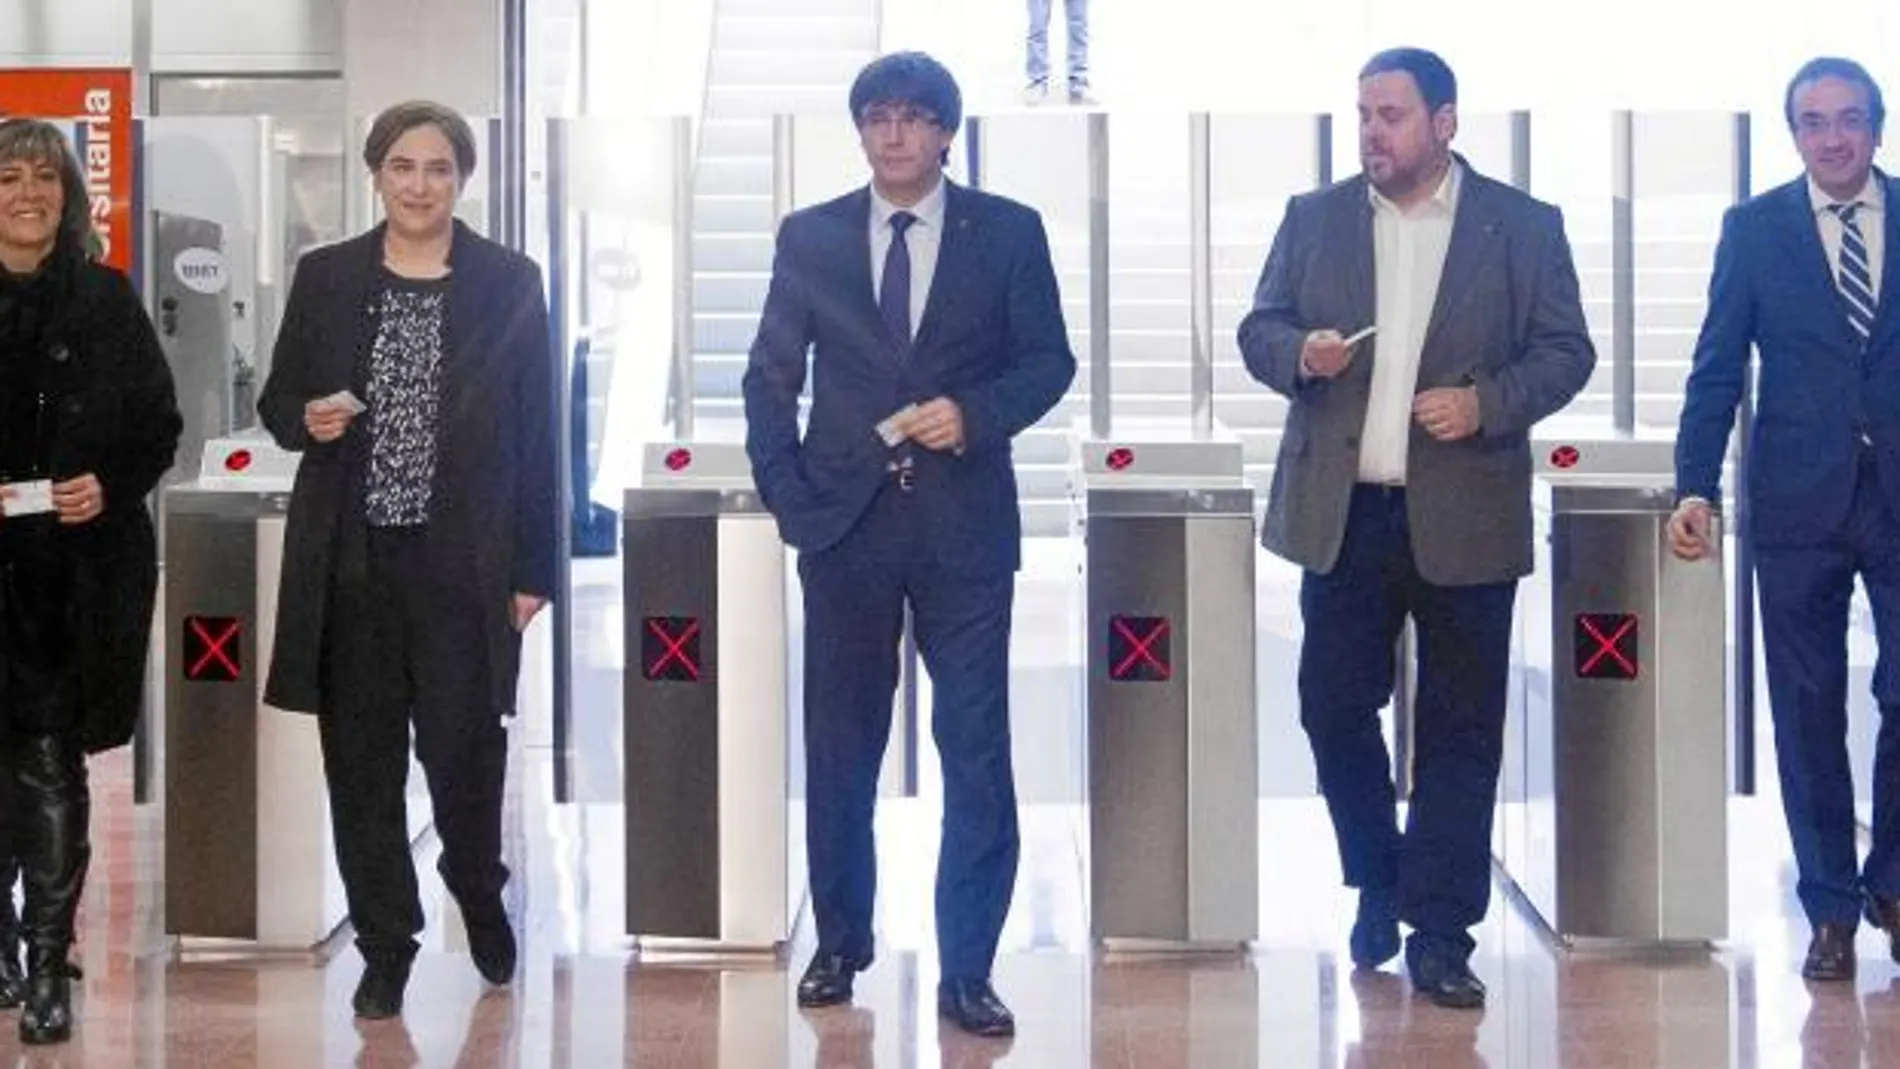 El expresidente de la Generalitat, Artur Mas, participó en el acto de inauguración de la L9 de metro junto a Puigdemont